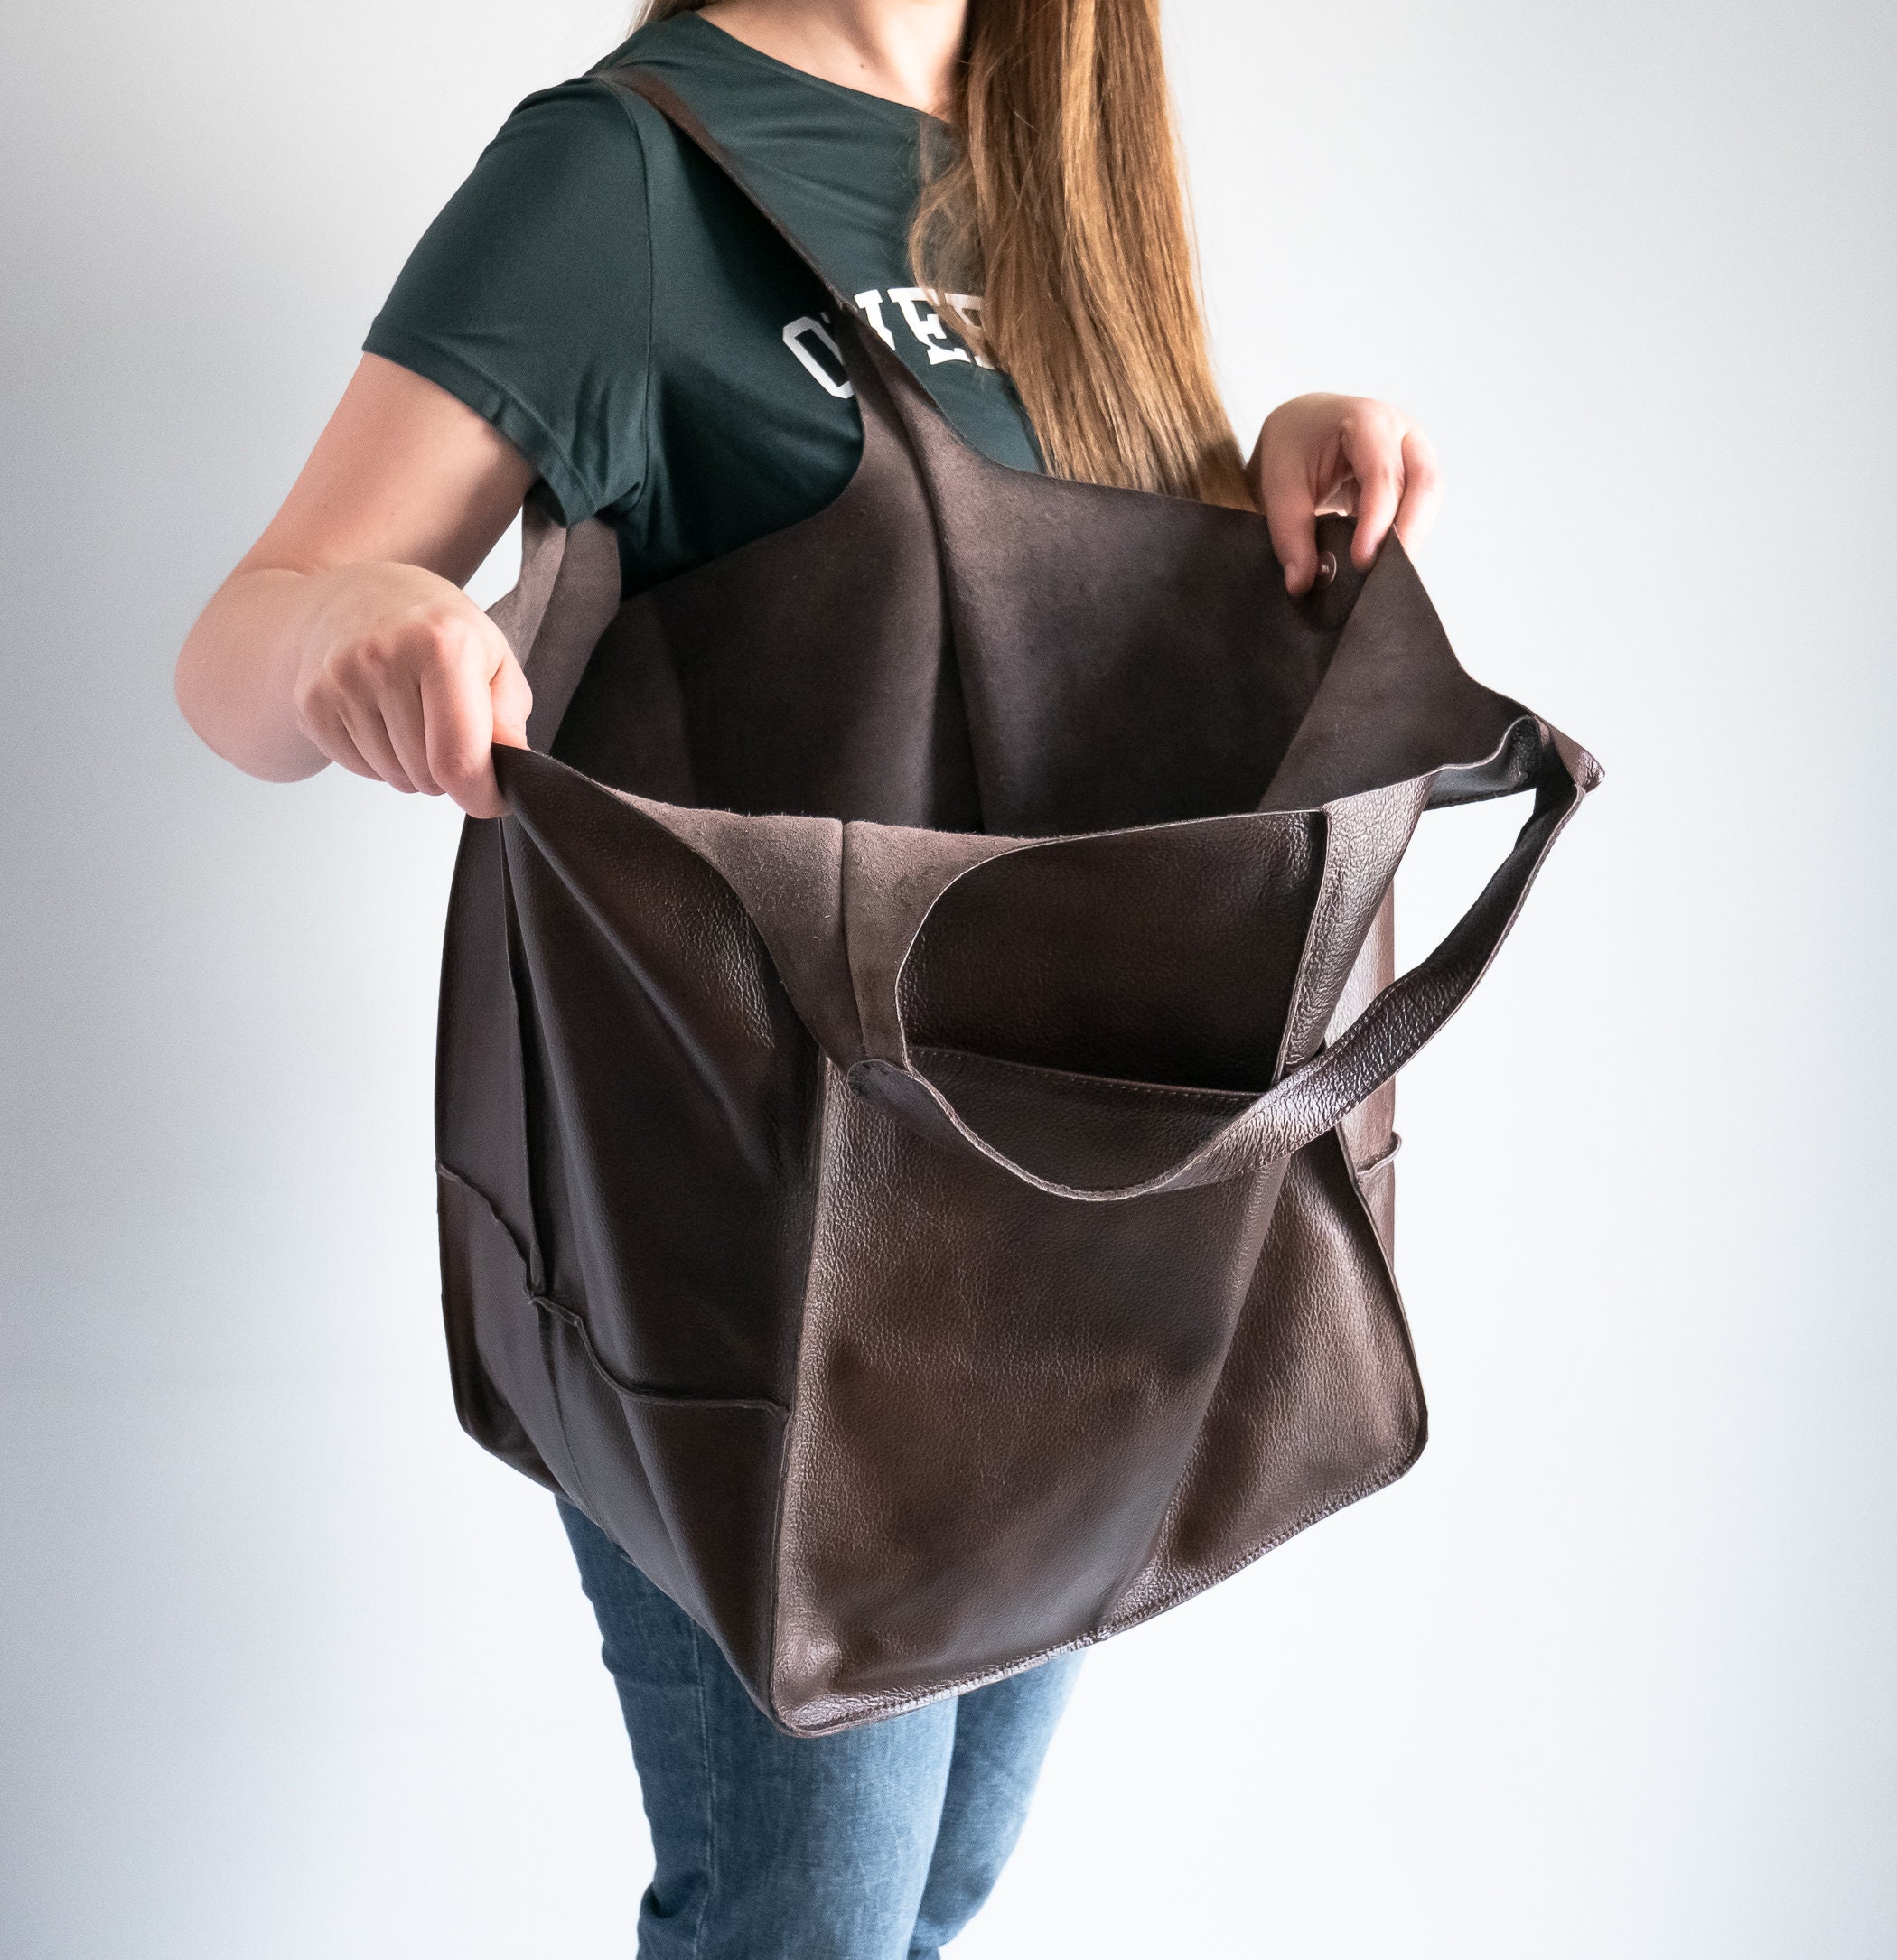 Oversize Brown Handbag, Shoulder Hobo Bag, Chocolate Leather Large Tote, Everyday Slouchy Women Purse Shoulder Bag Af